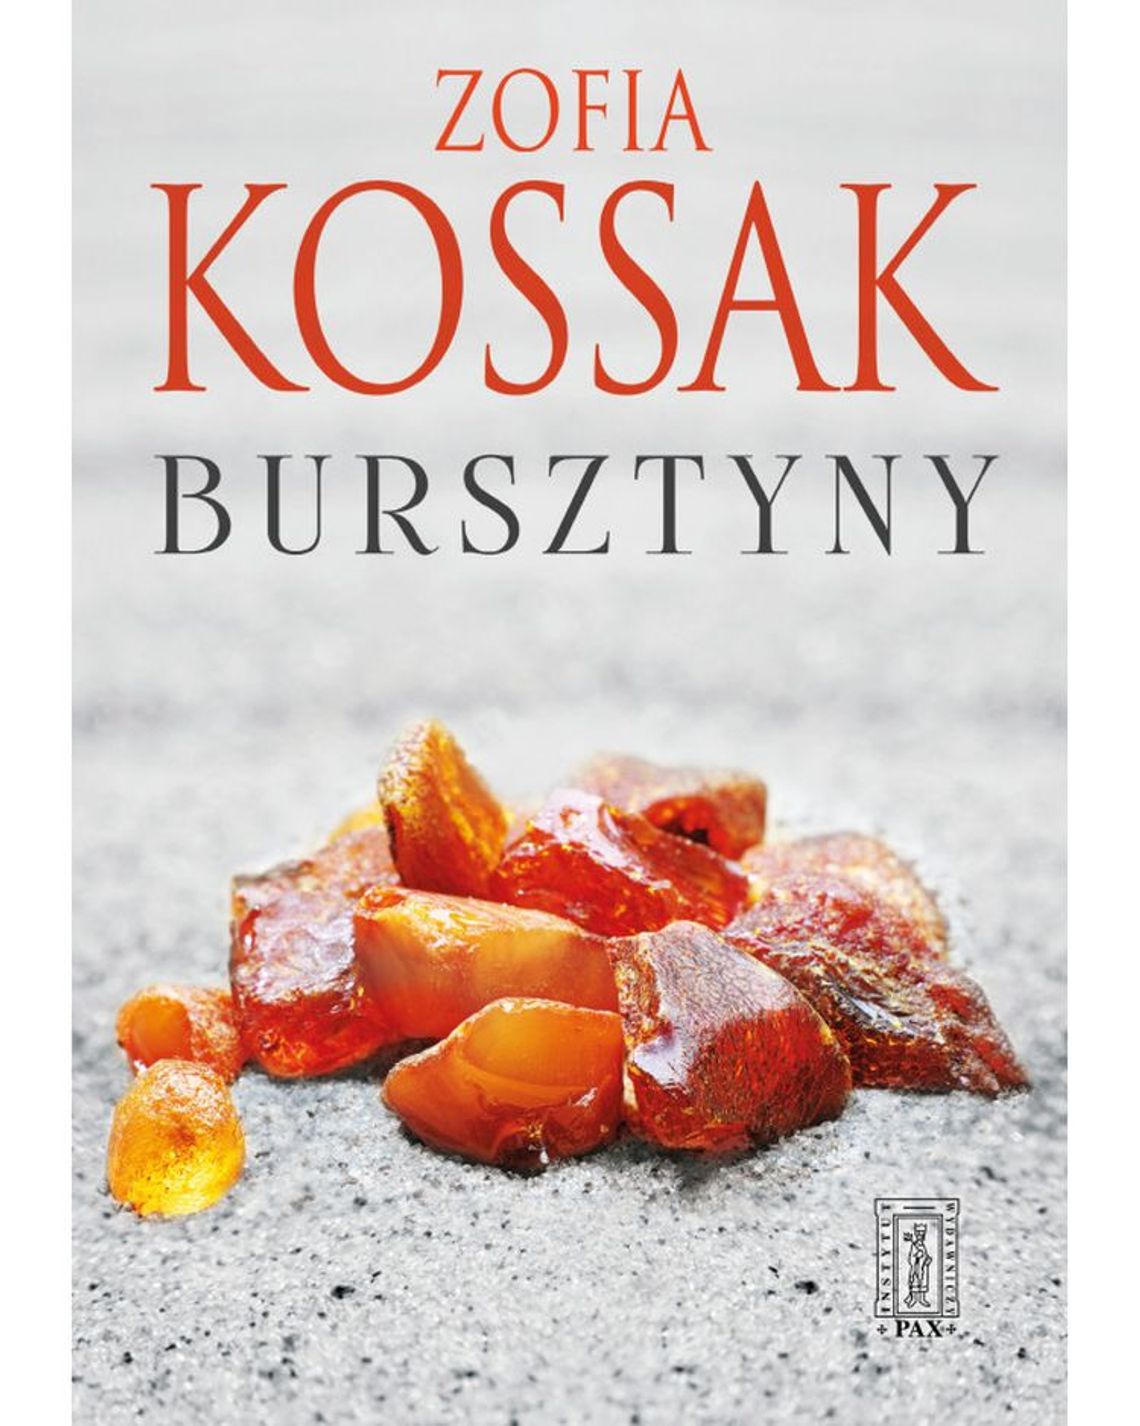 Recenzja książki ,,Bursztyny" Zofii Kossak